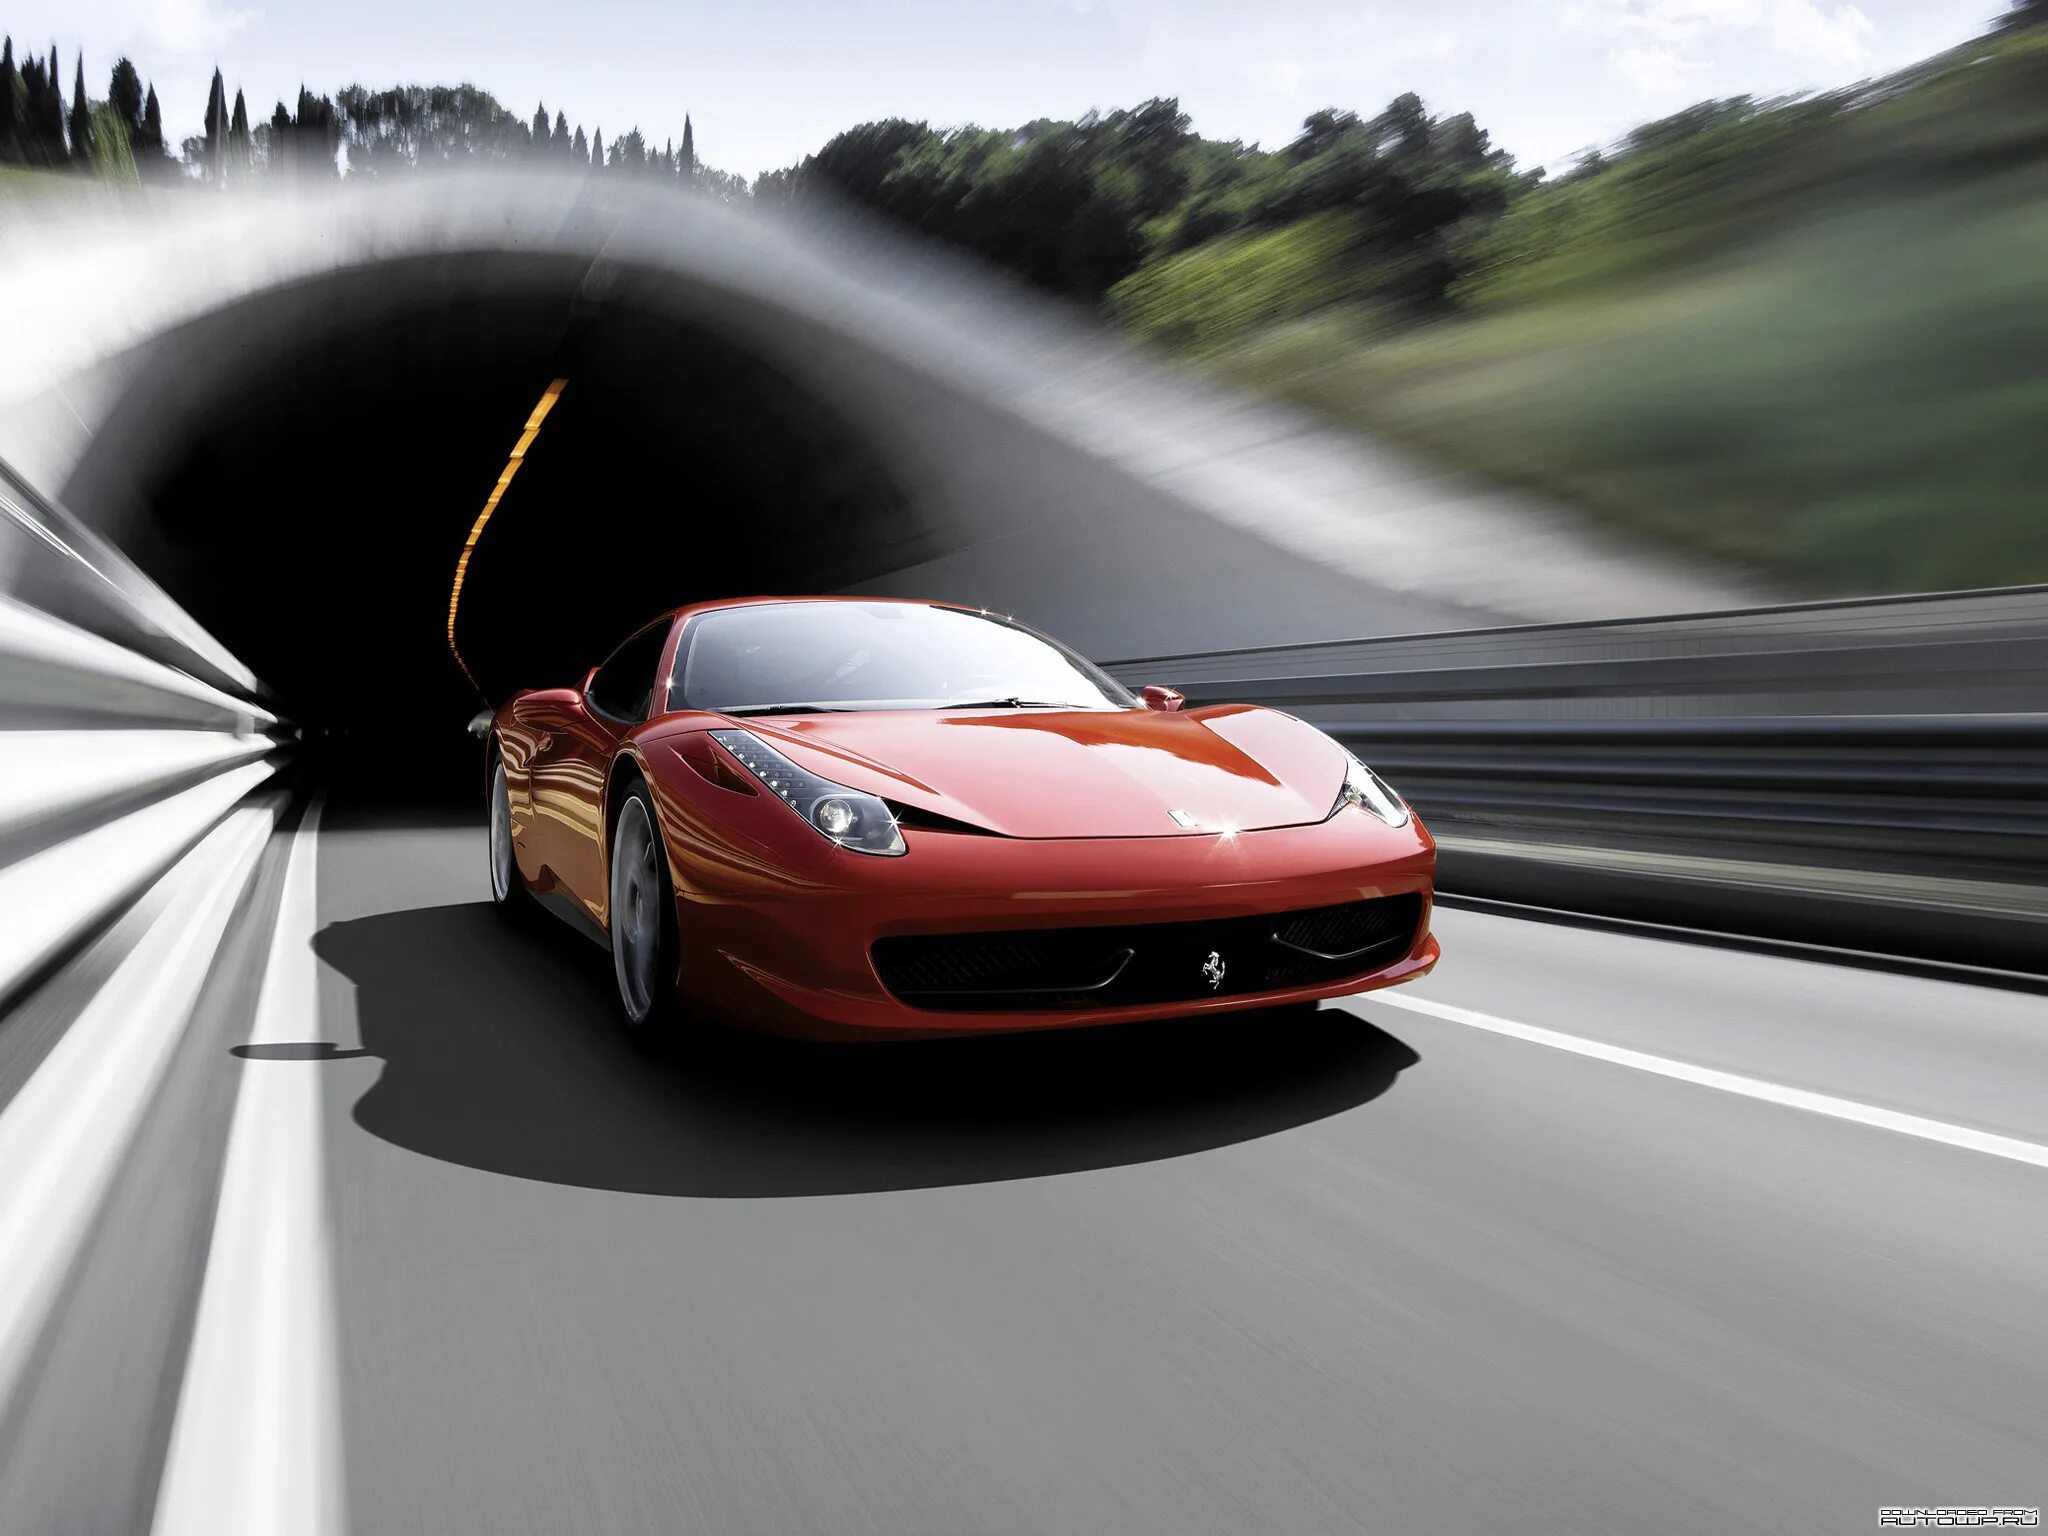 Ferrari 458 аэродинамика. Машина в движении. Красивая машина на дороге. Авто скорость. Машина красиво едет